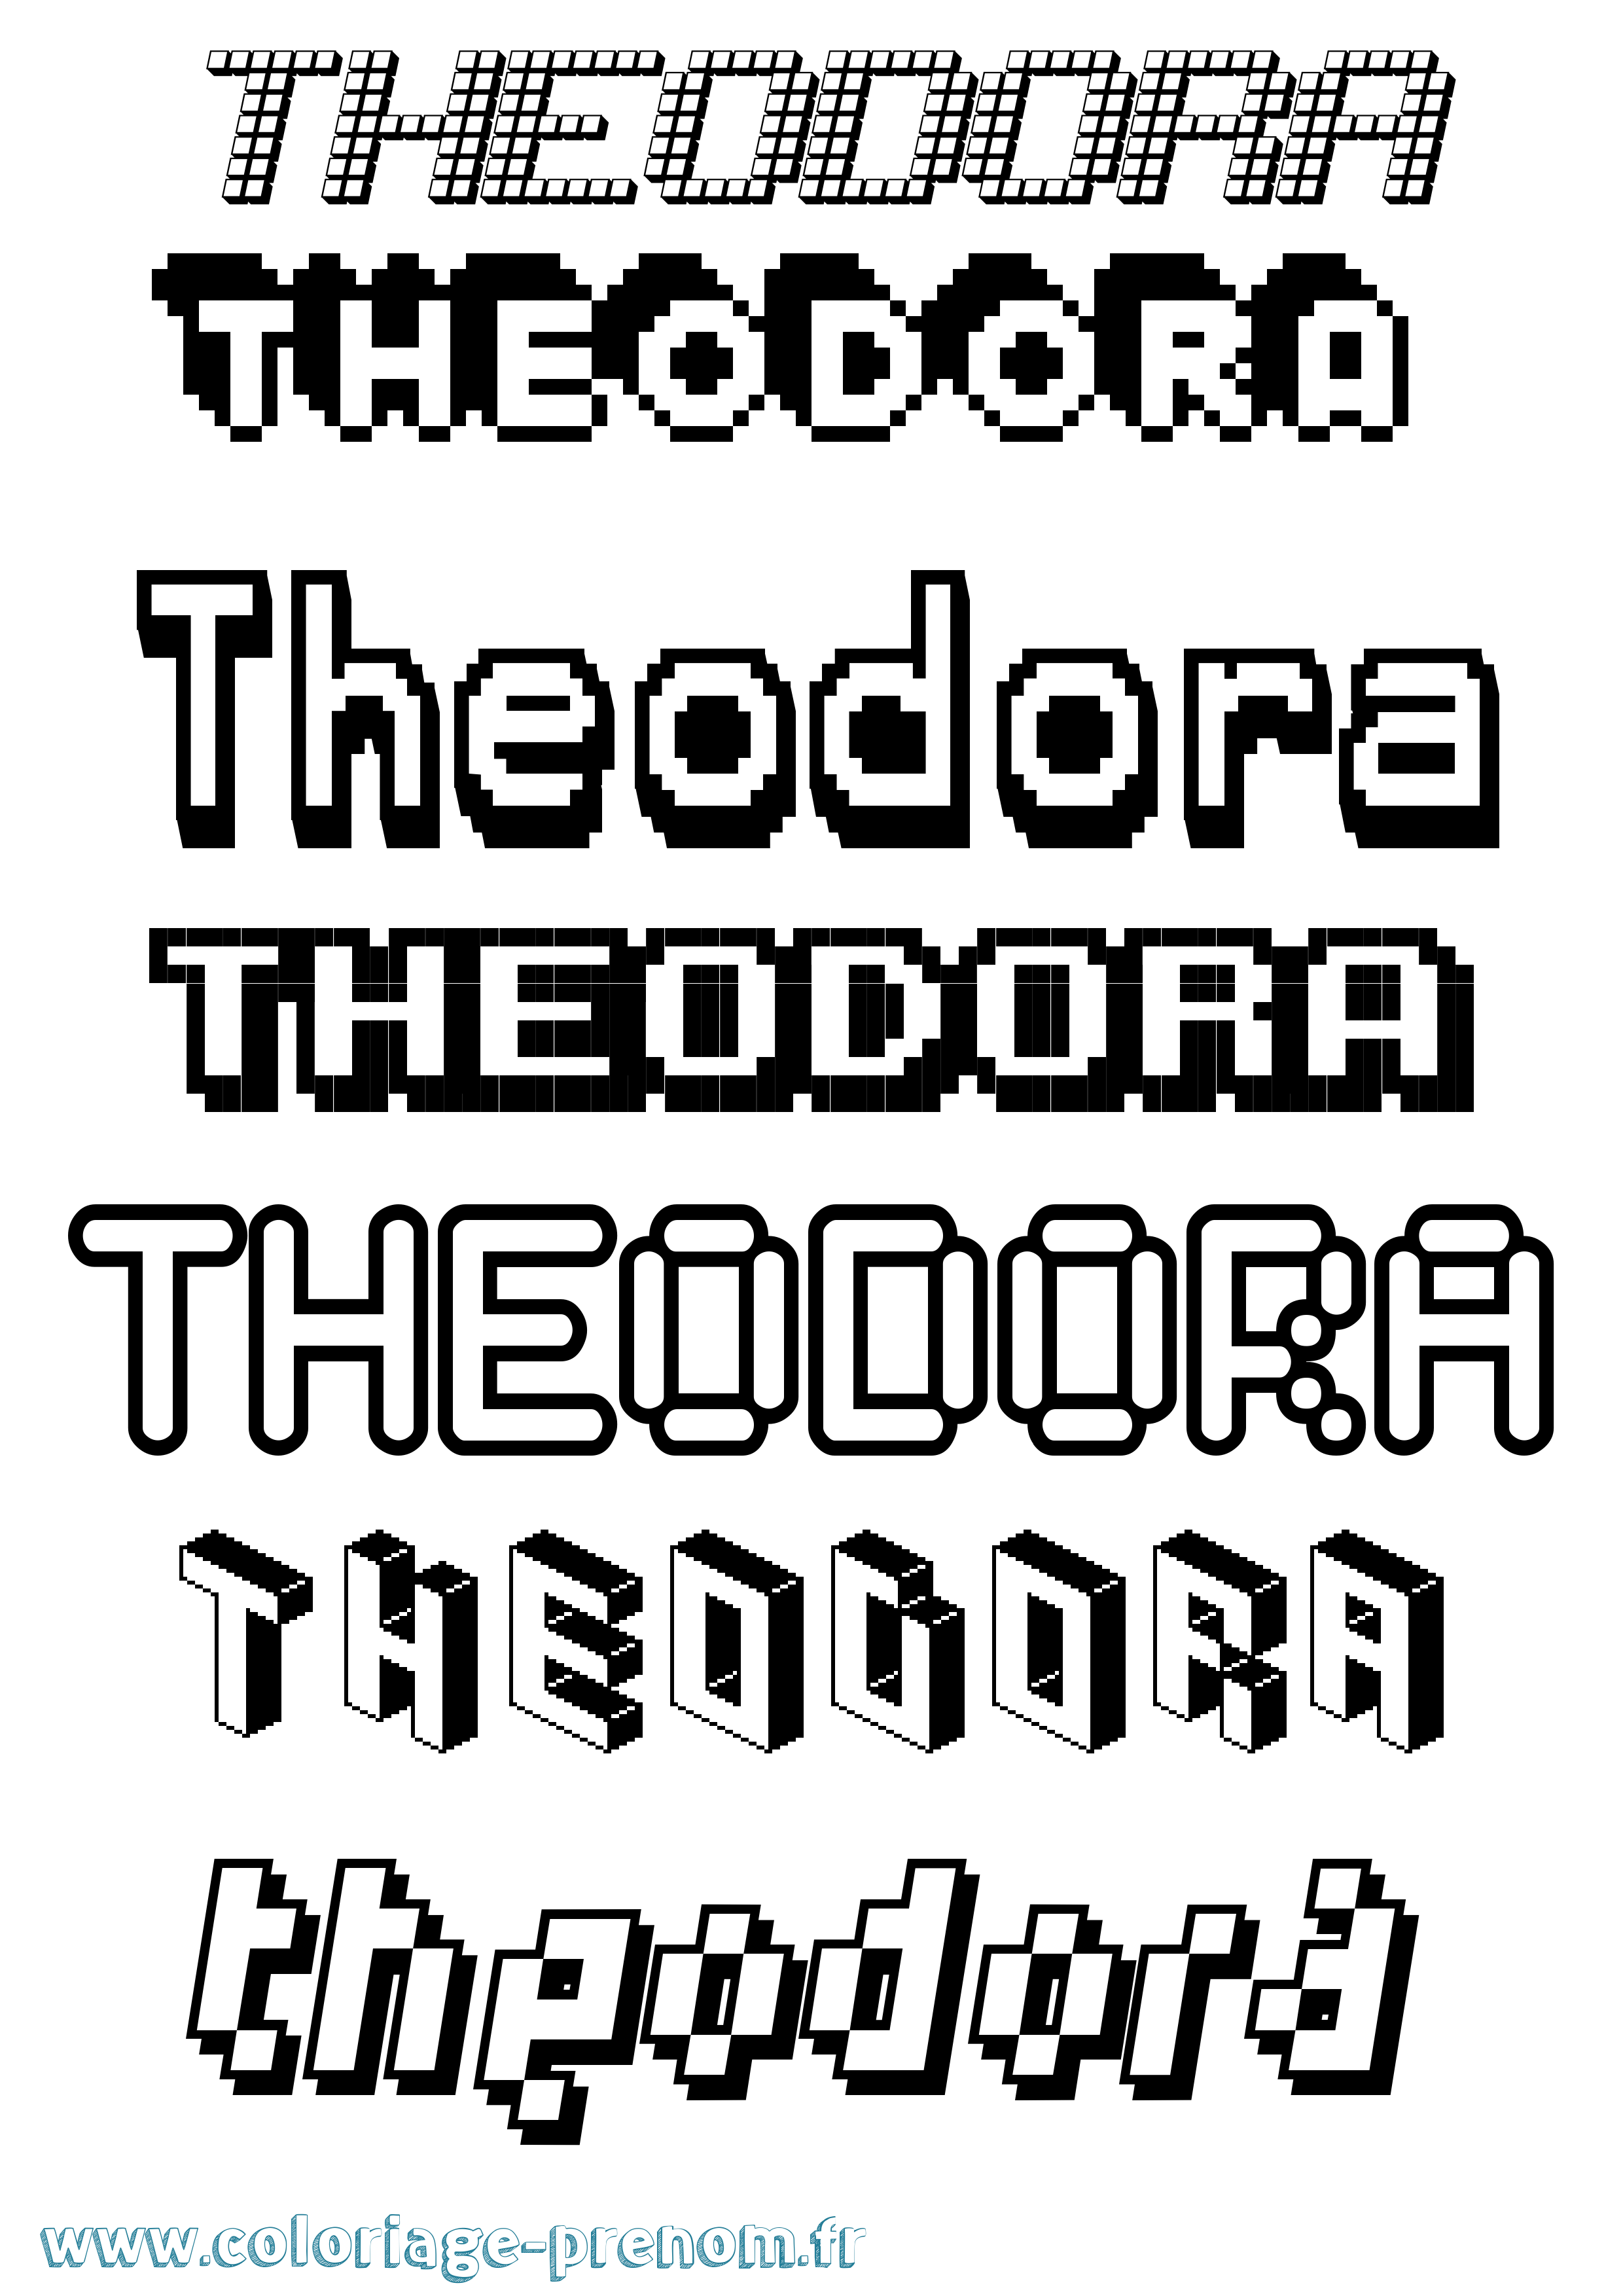 Coloriage prénom Theodora Pixel